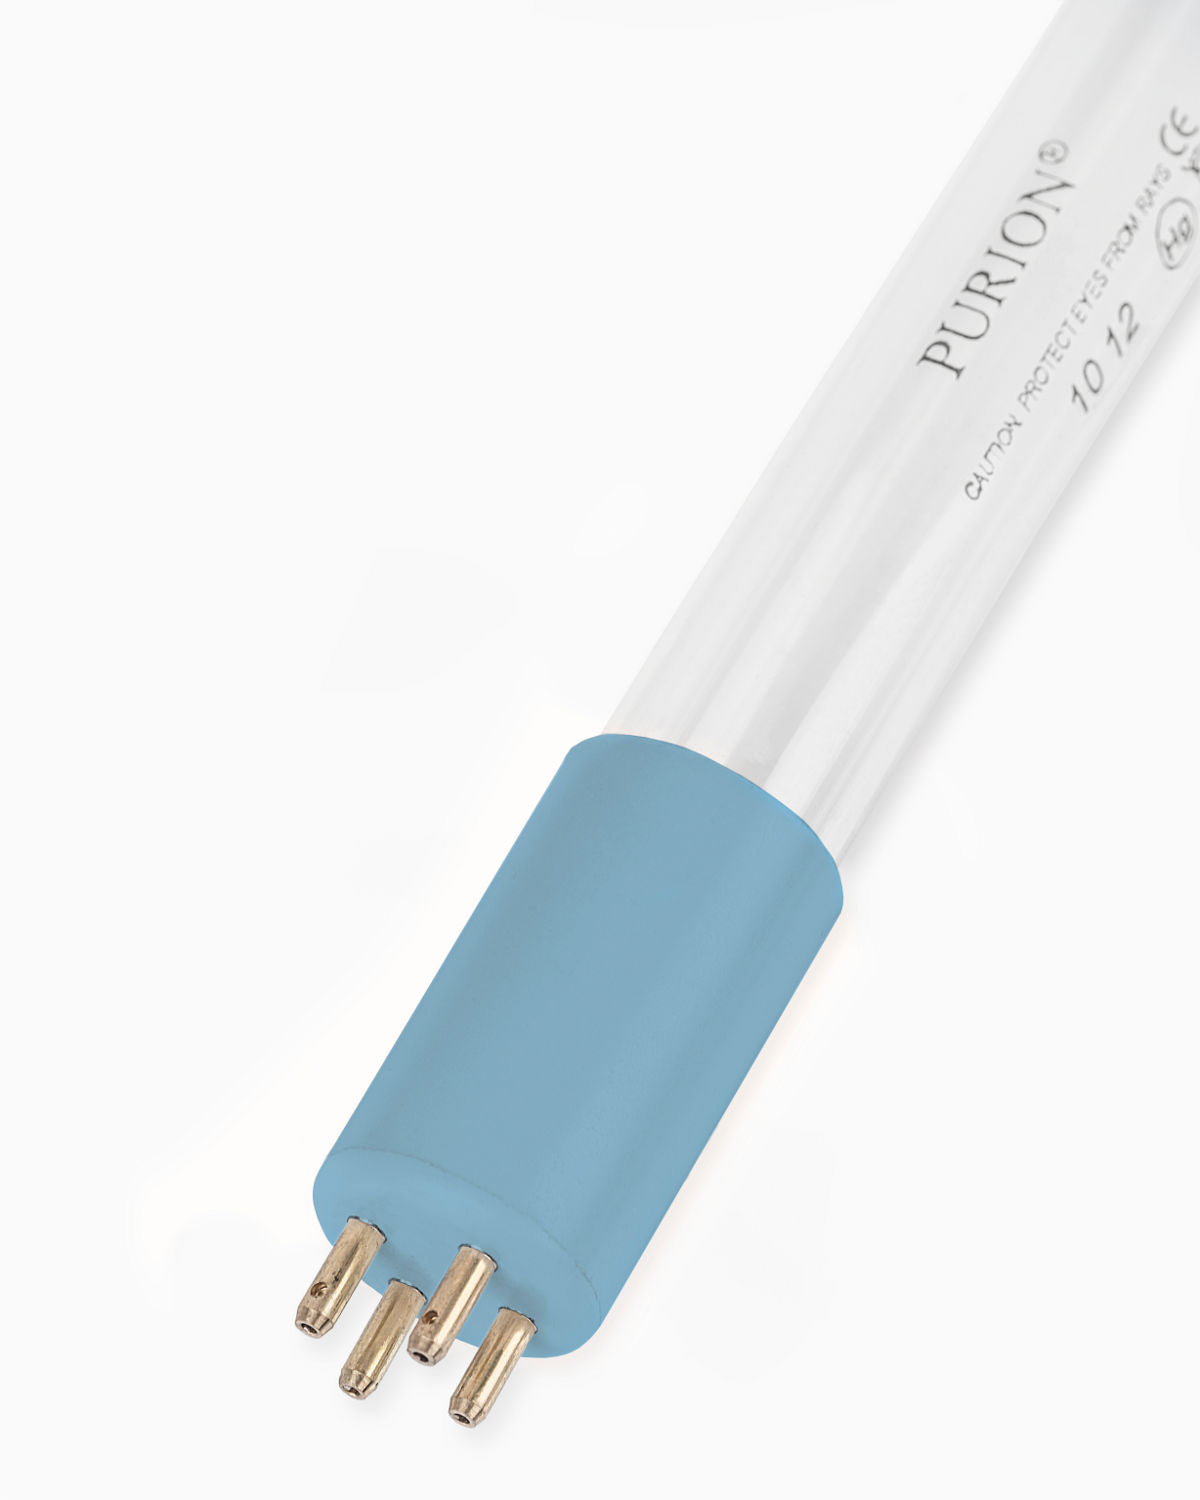 Eine PURION 400 12 V/24 V DC OTC-Blaulichtröhre leuchtet vor einem weißen Hintergrund, liefert eine UV-C-Lampe mit 10 W und hilft, entkeimtes Trinkwasser zu erzeugen. (Markenname: PURION GmbH)